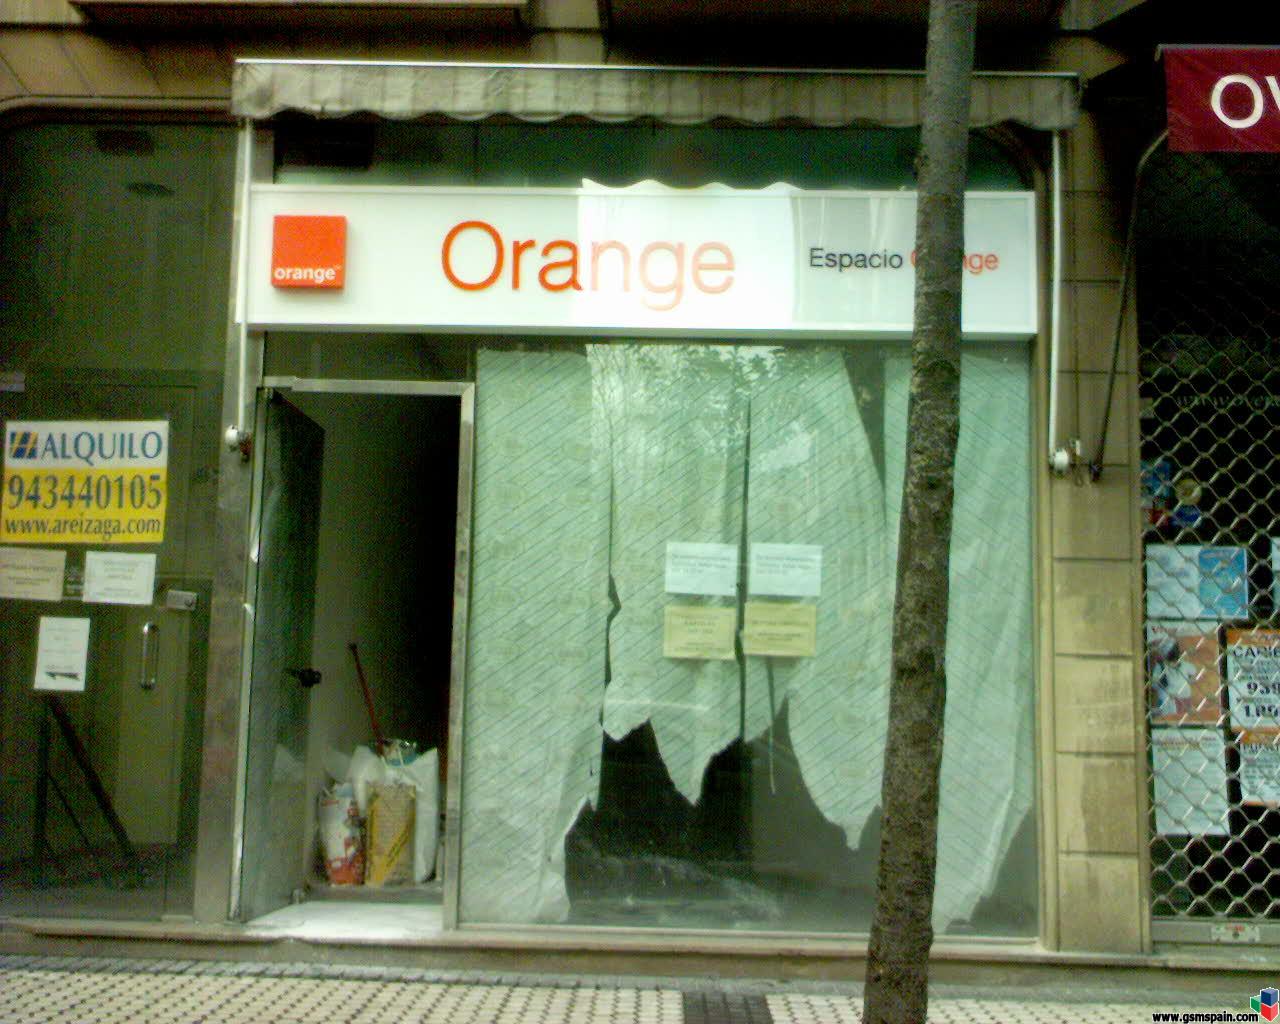 <<Ya estn aqu!! - Primera tienda de Espacio Orange en San Sebastin!!>>